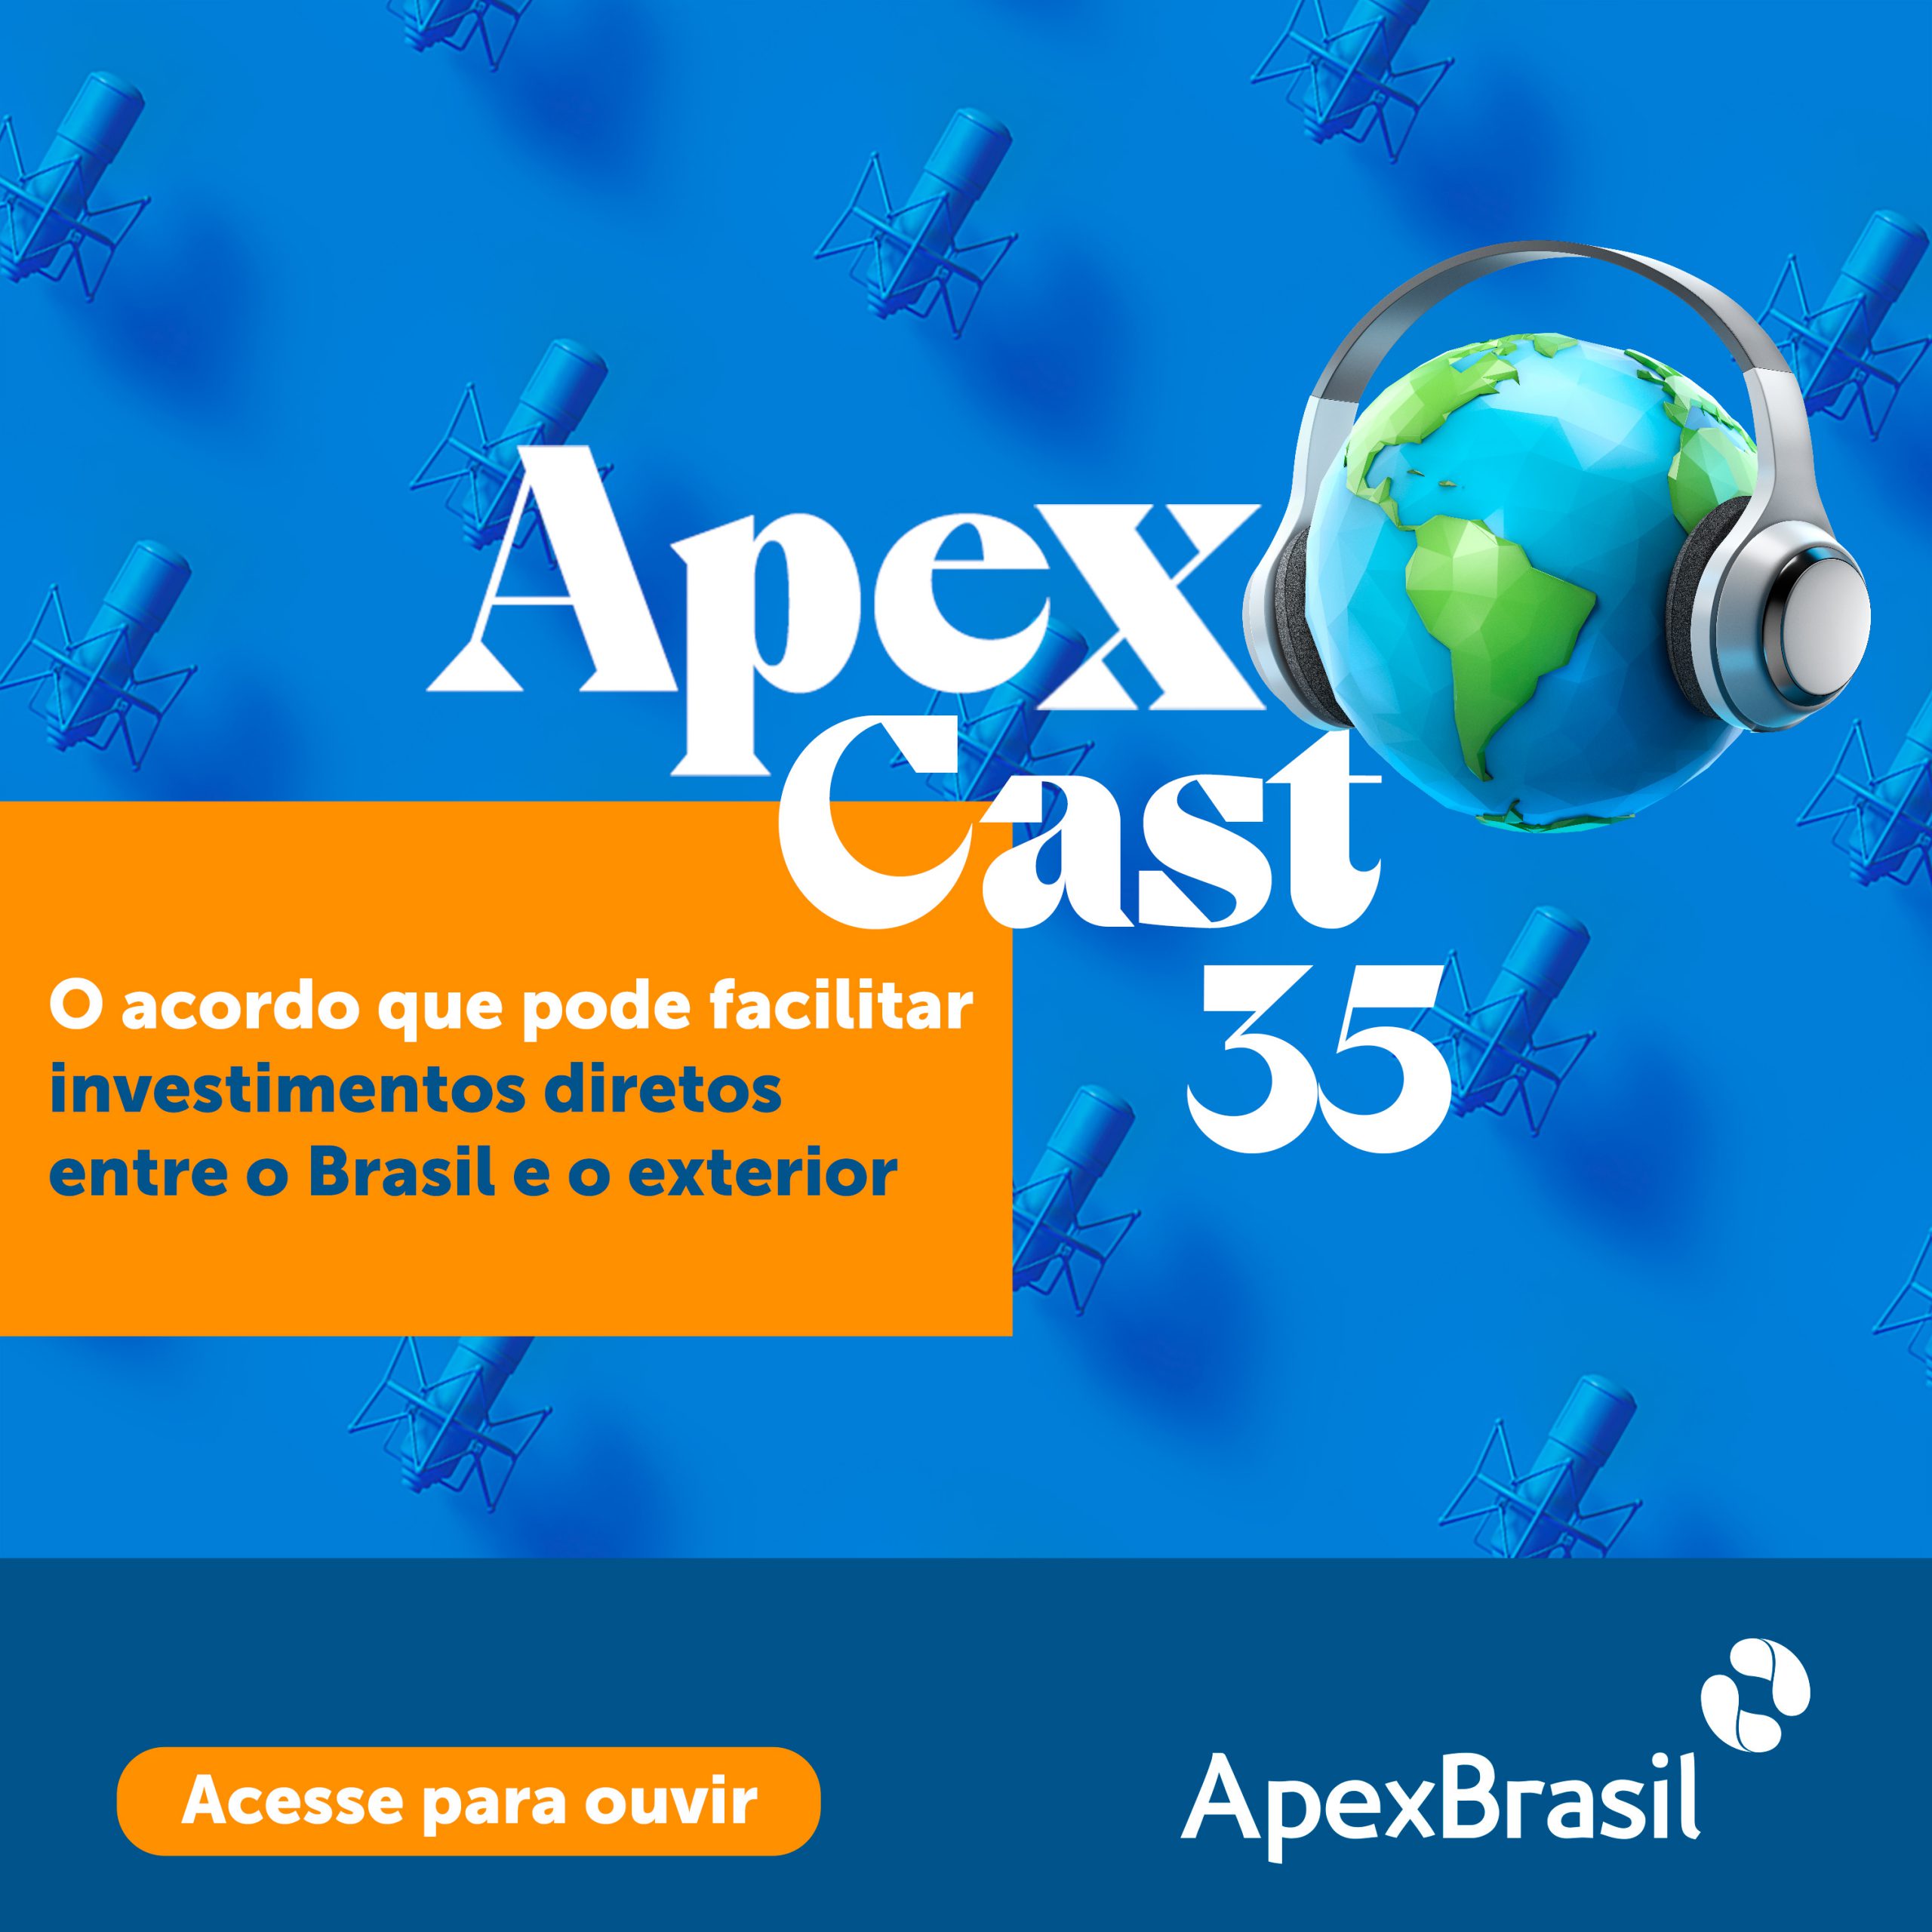 ApexCast trata de acordo que pode facilitar investimentos diretos entre o Brasil e o exterior